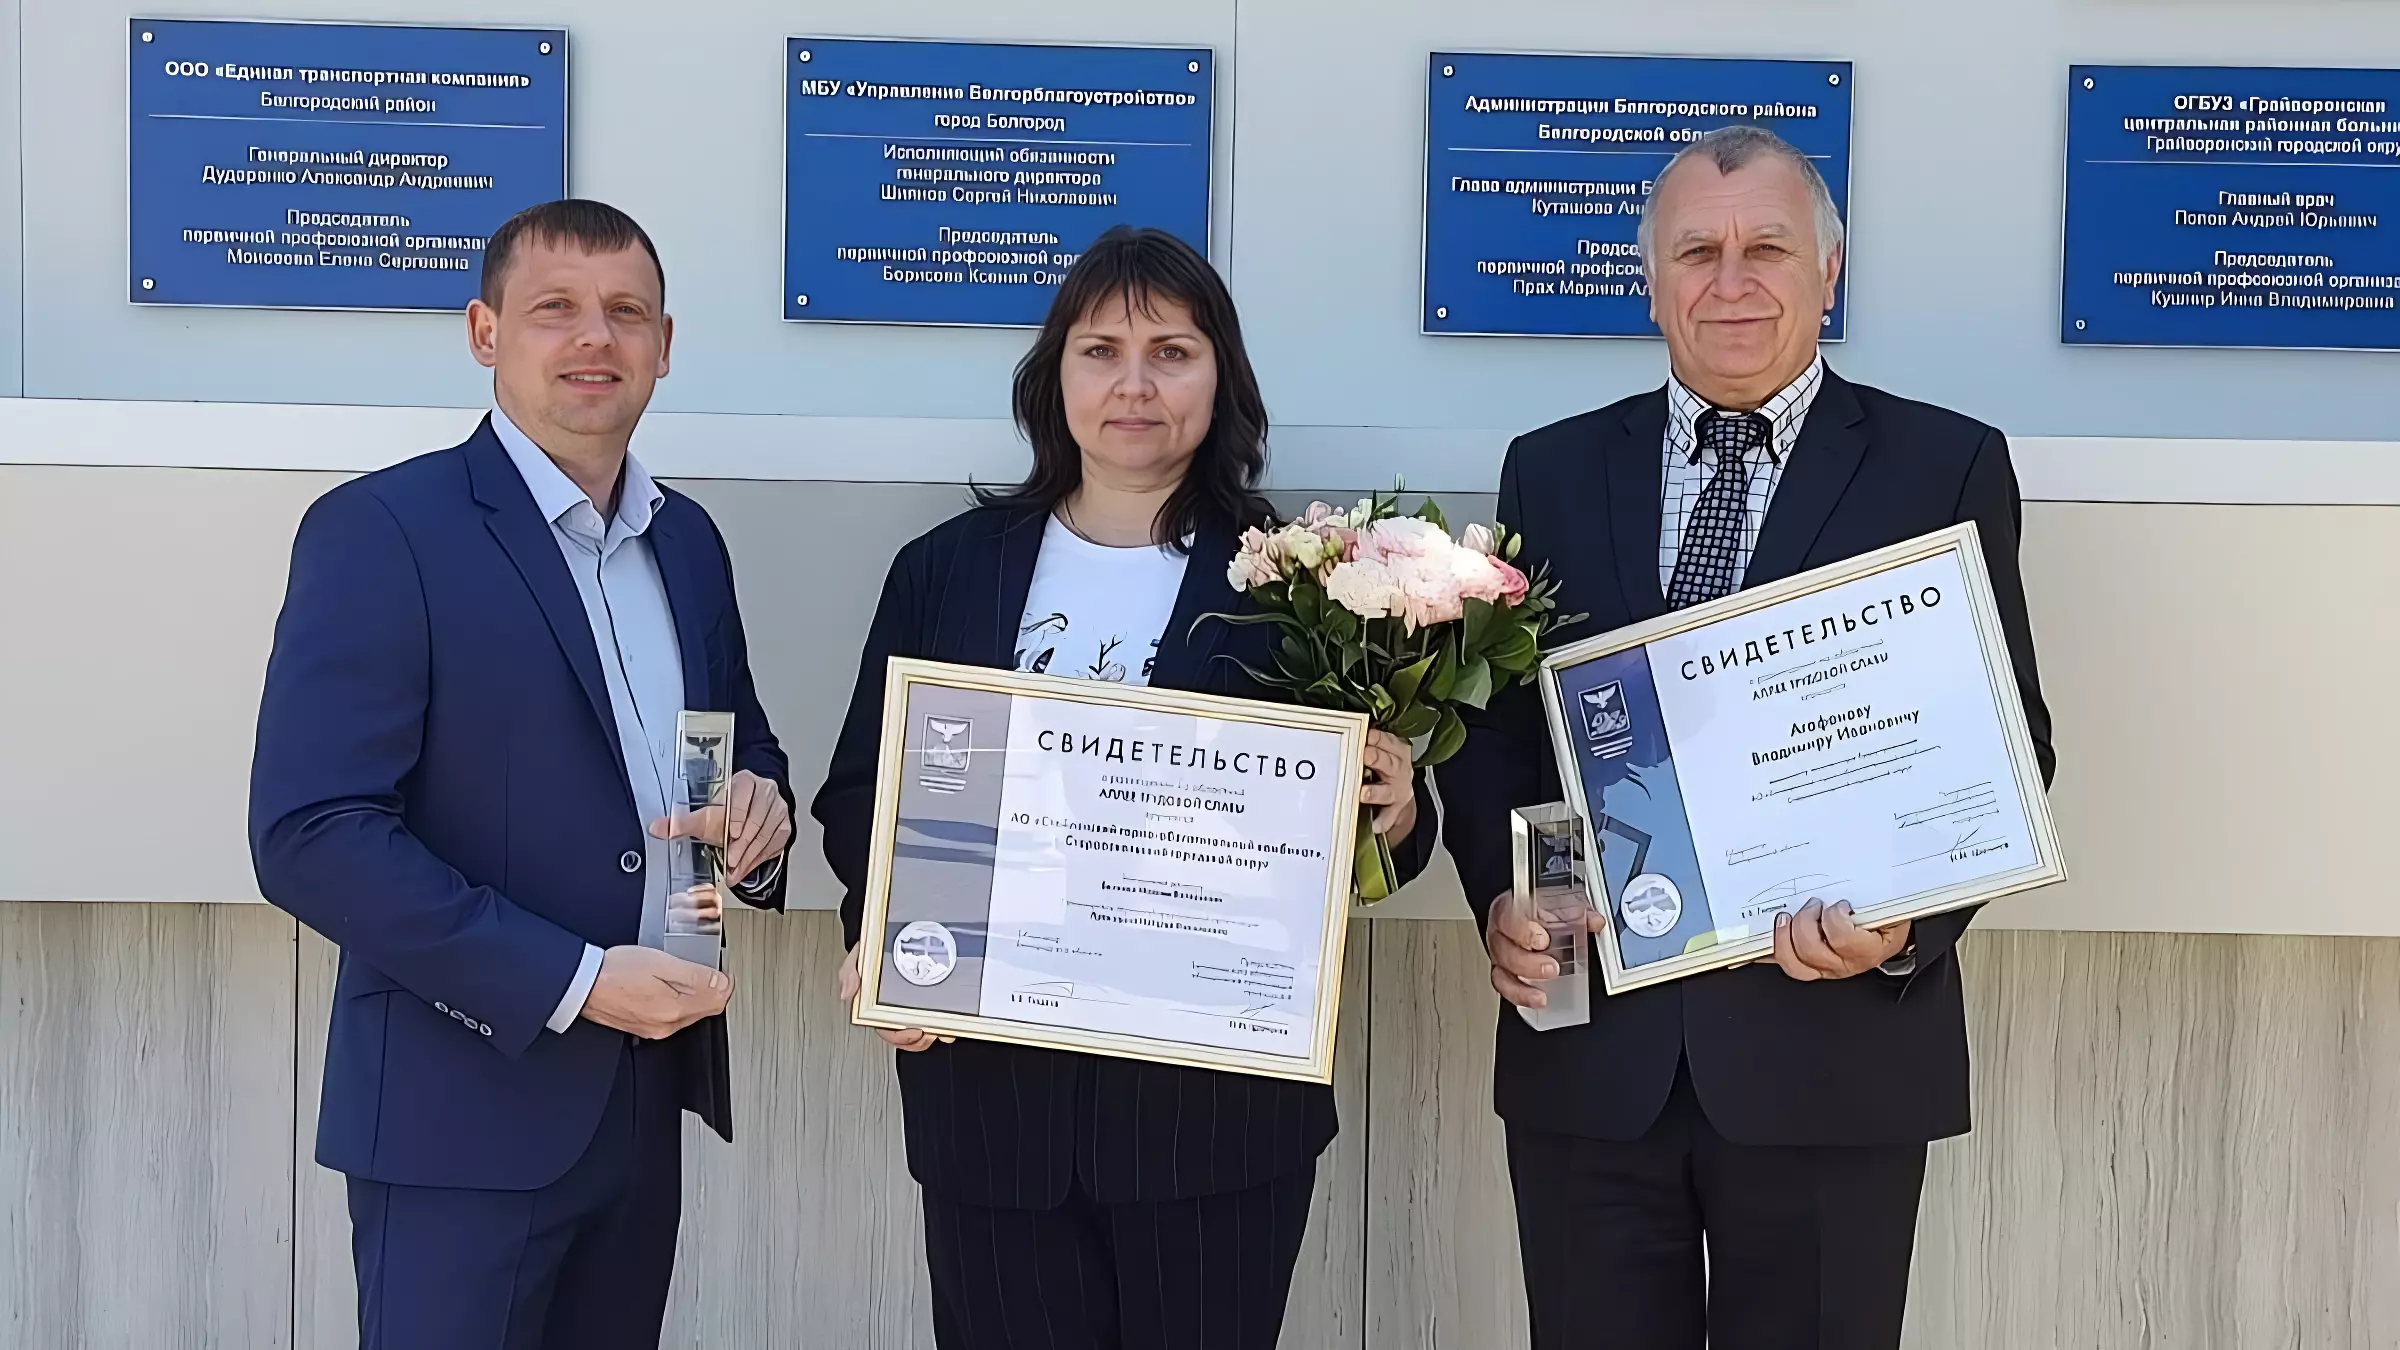 СГОК и работник комбината представлены на Алее Трудовой Славы Белгородской области